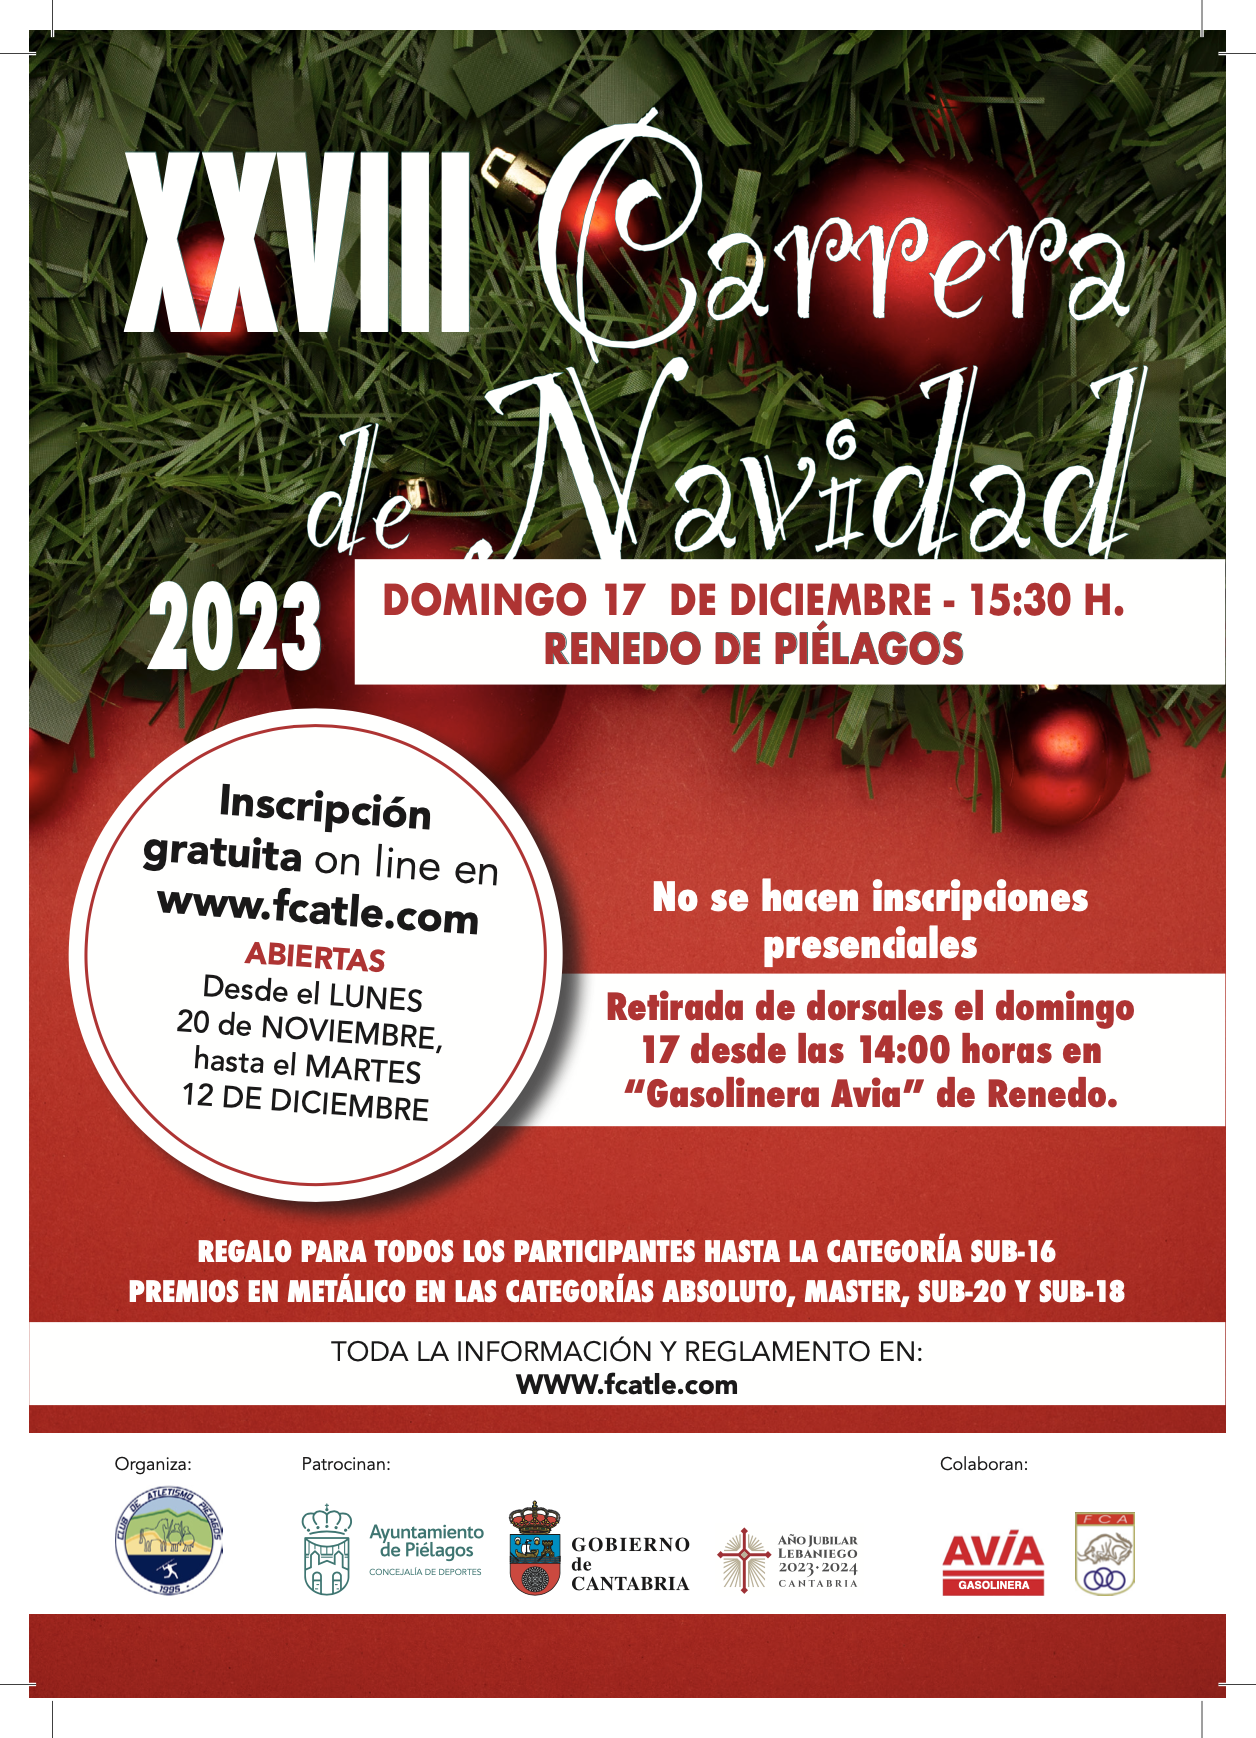 XXVIII Carrera de Navidad de Piélagos @ Renedo, Cantabria